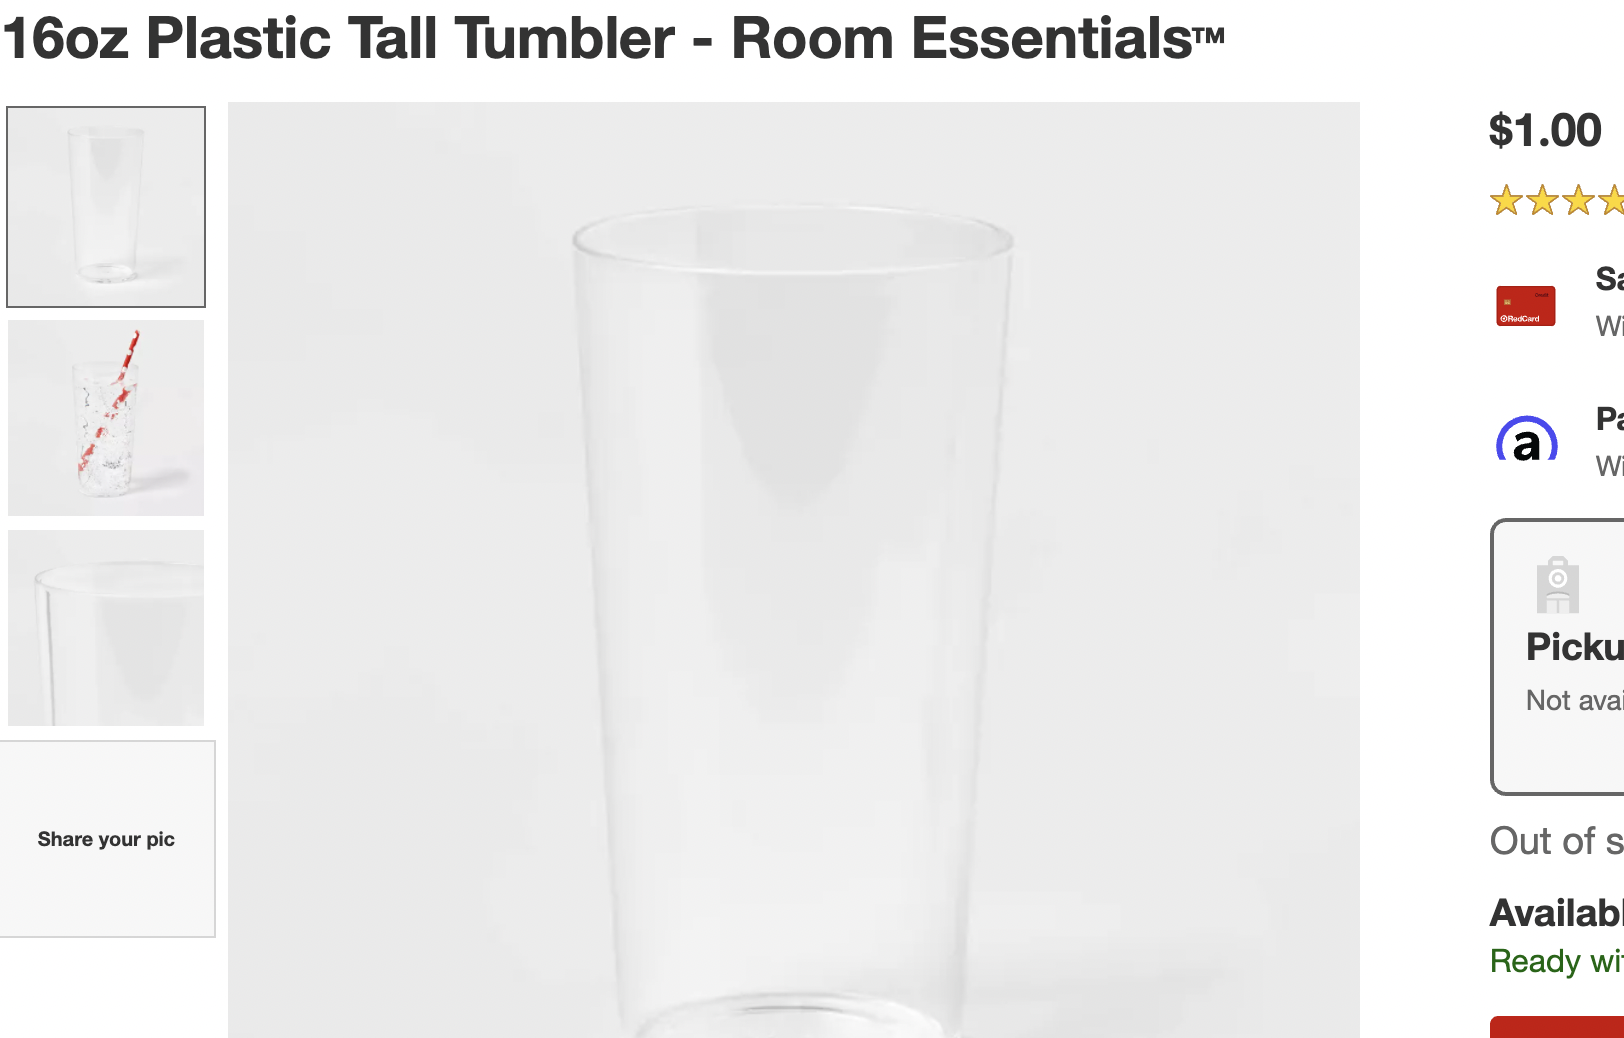 Plastic tall tumbler